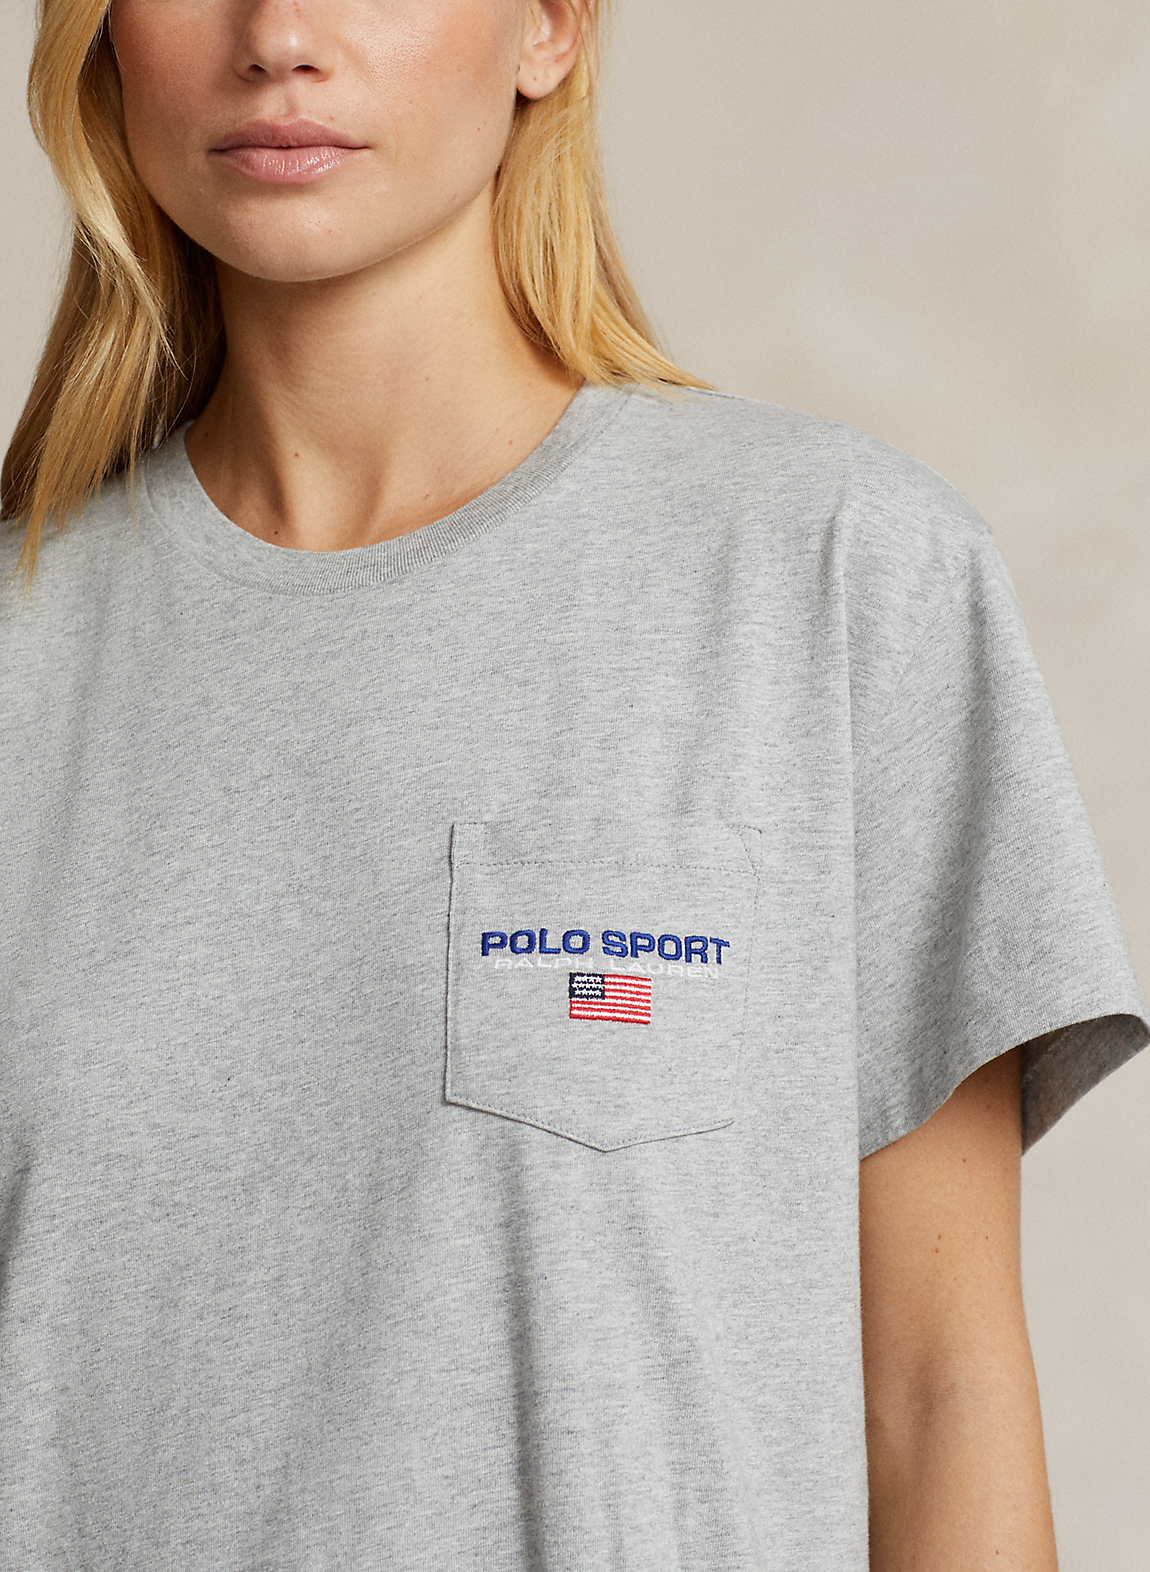 Polo Sport コットン ジャージー Tシャツ ドレス